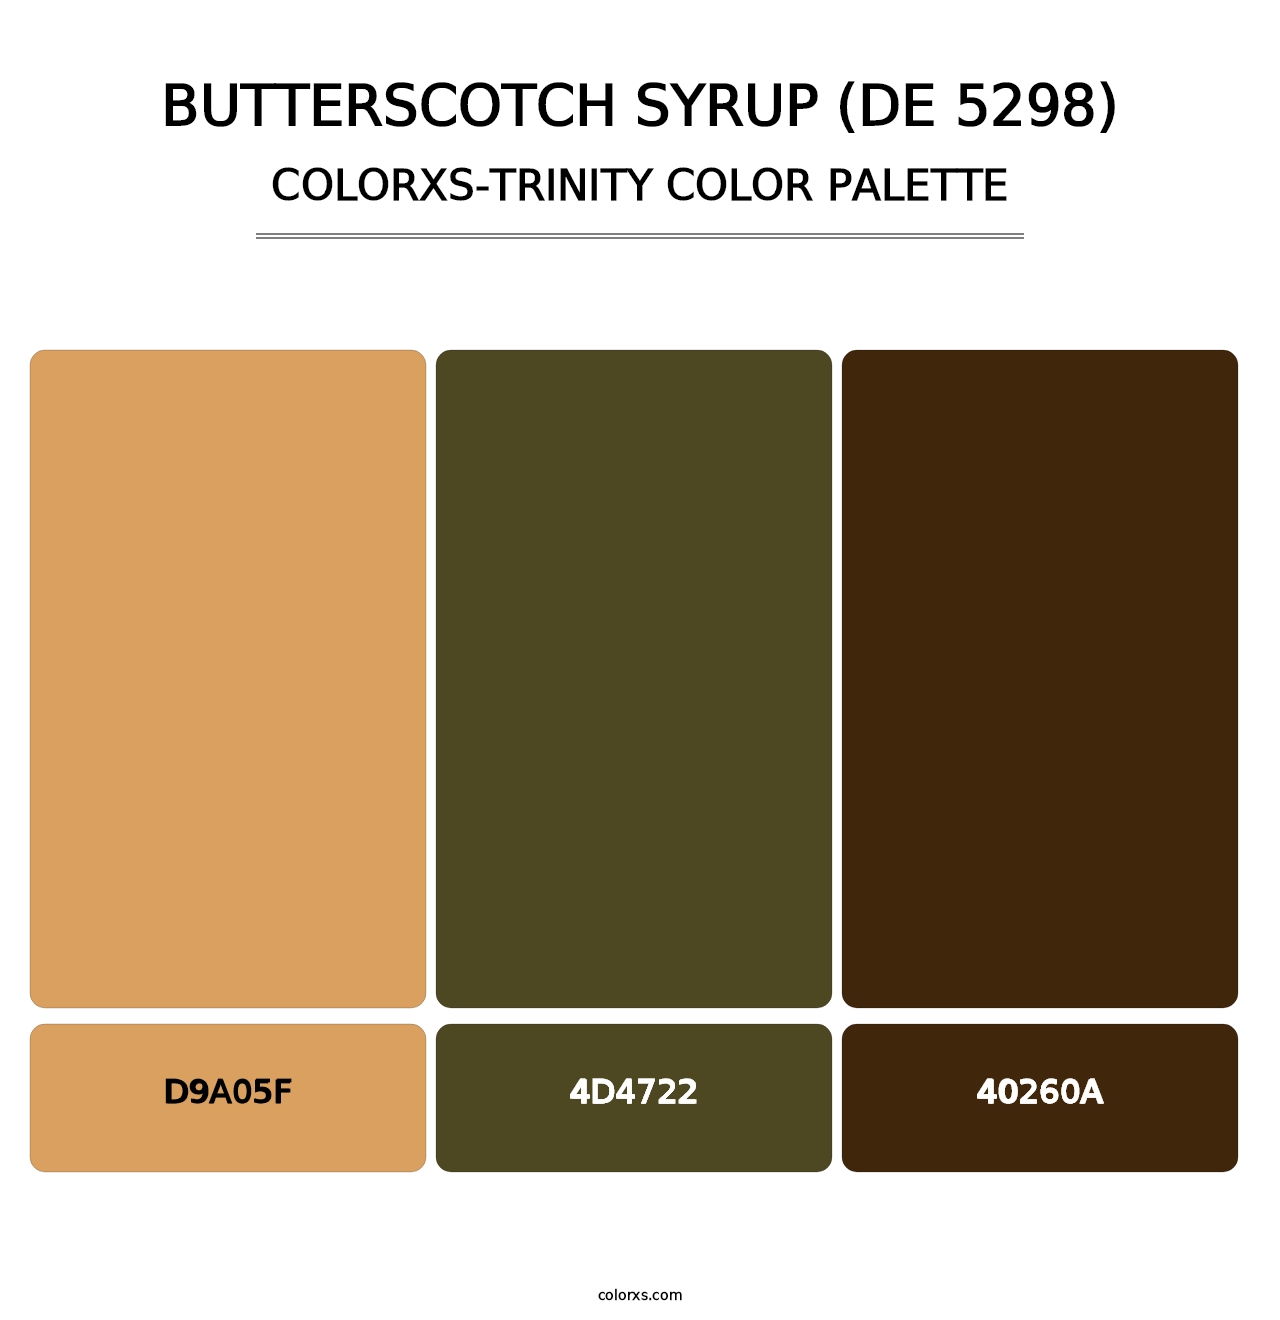 Butterscotch Syrup (DE 5298) - Colorxs Trinity Palette